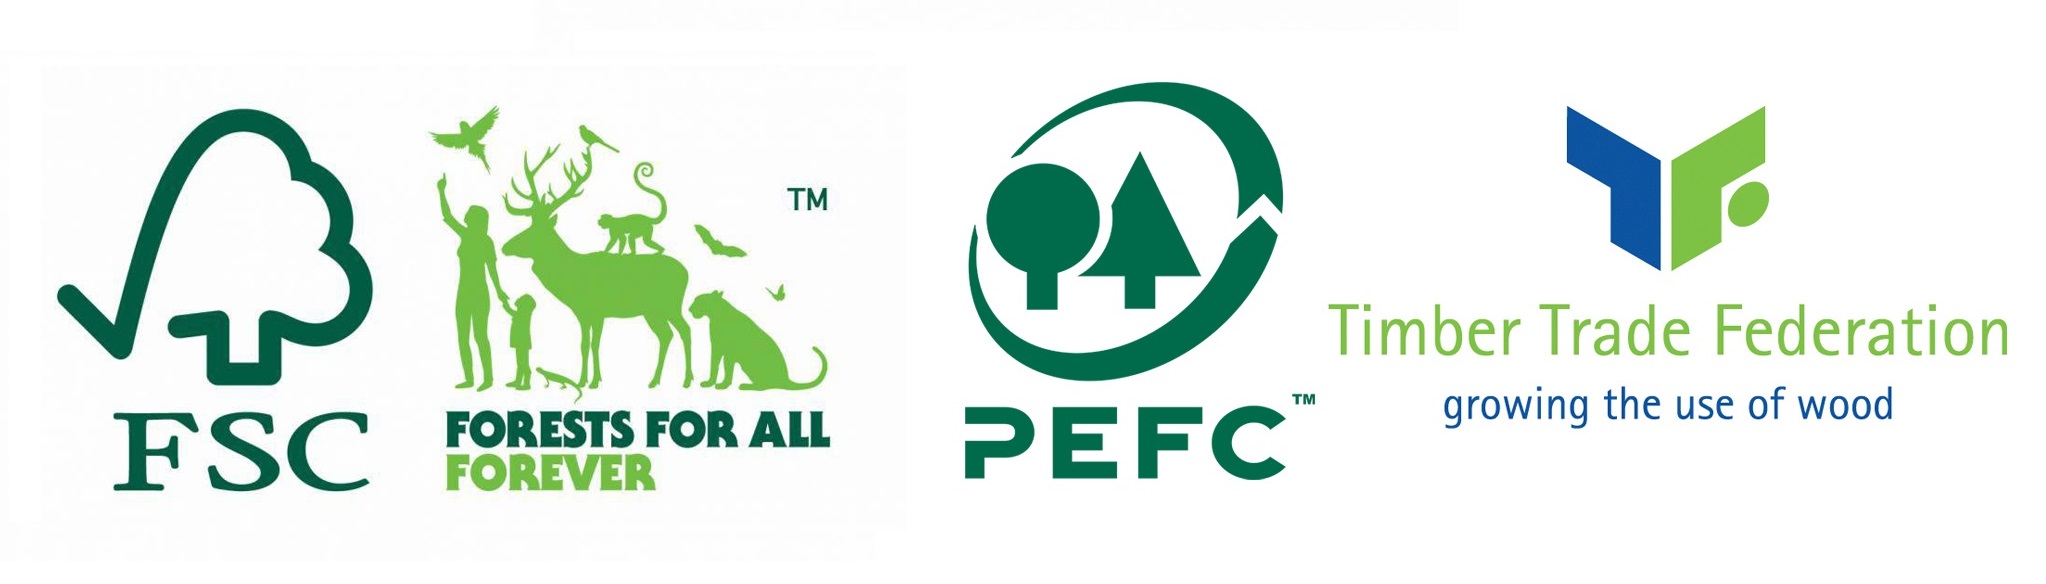 Oceanic Suanas compromete-se a usar madeira de florestas com certificados FSC e PEFC